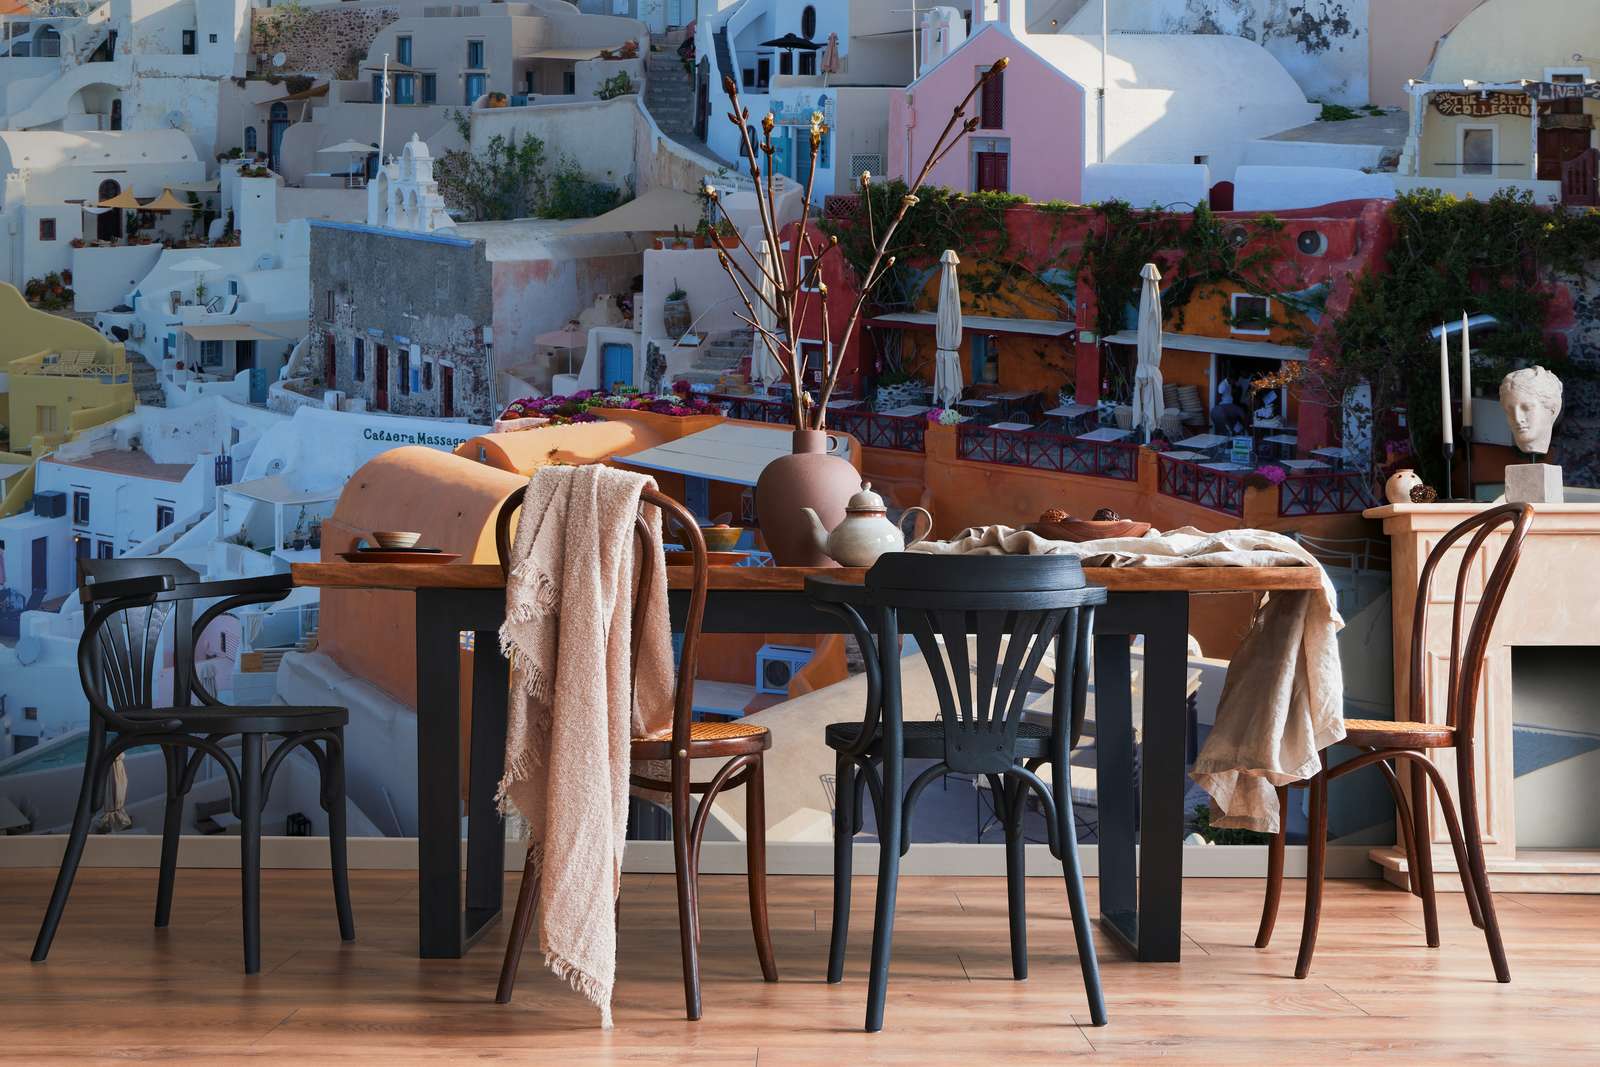             Fototapete Häuser von Santorini – Perlmutt Glattvlies
        